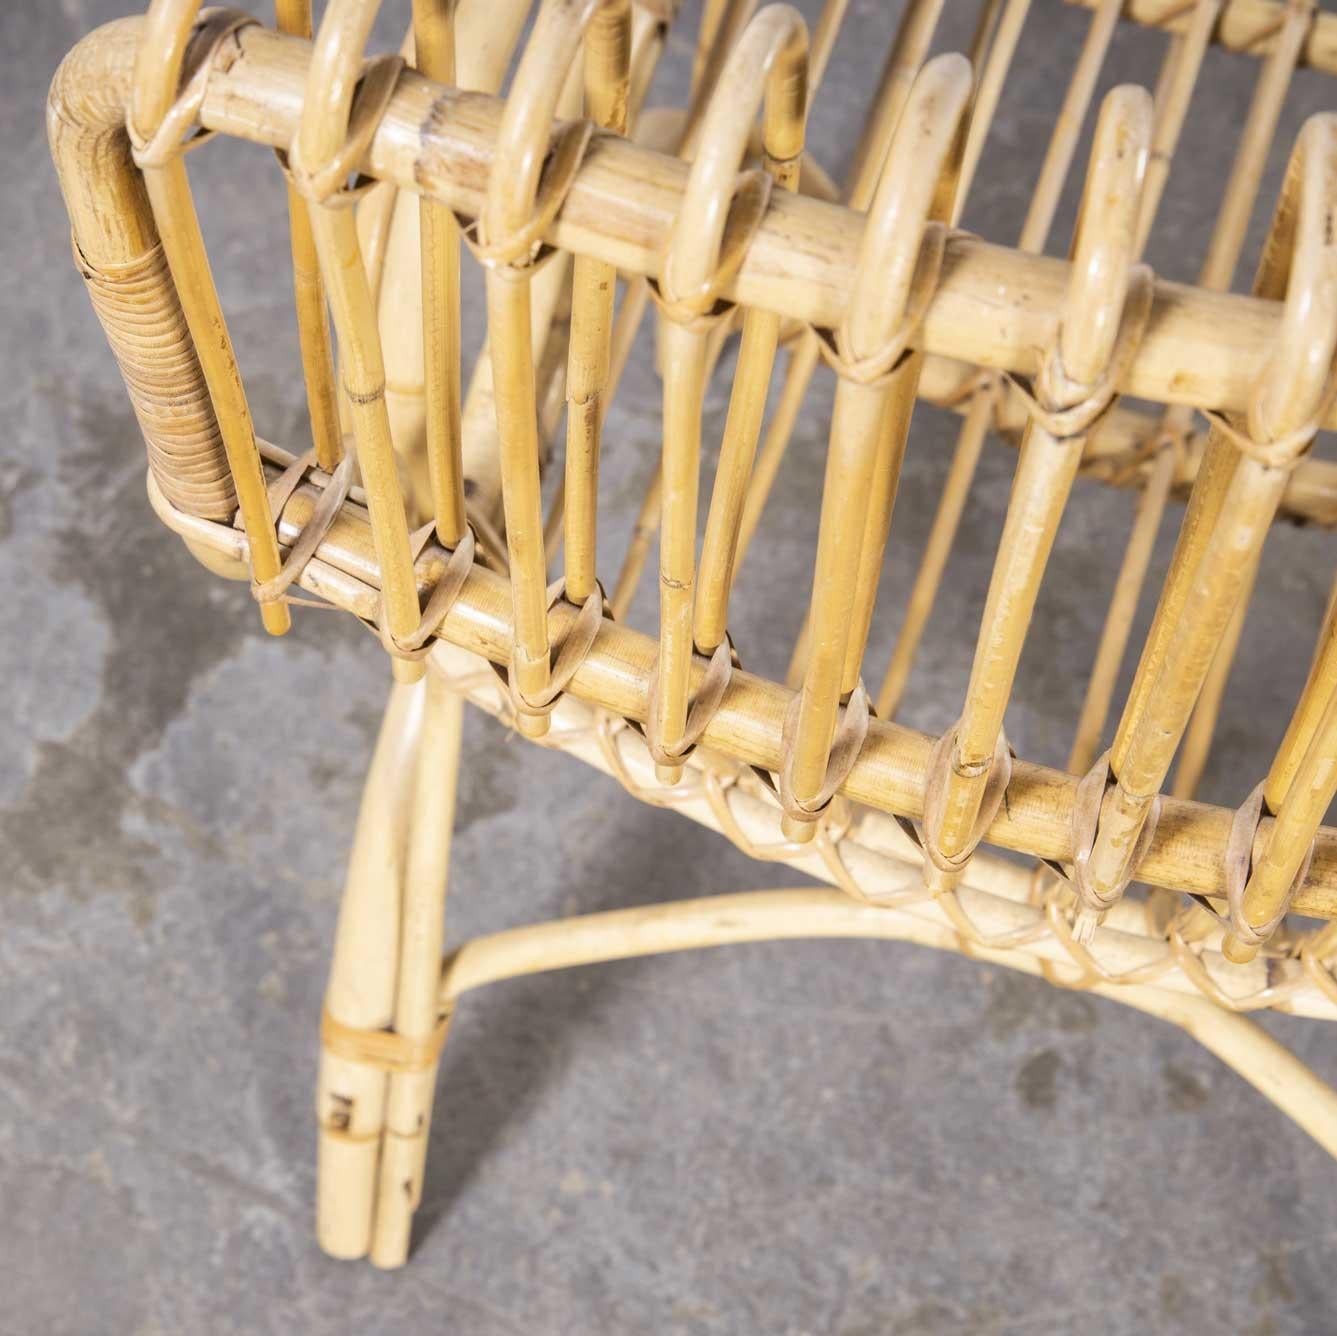 fauteuil en rotin italien des années 1970 - Franco Albini
fauteuil en rotin italien des années 1970 - Franco Albini. Nous ne pouvons pas l'attribuer à une quelconque documentation, mais le design et la qualité de la construction nous laissent